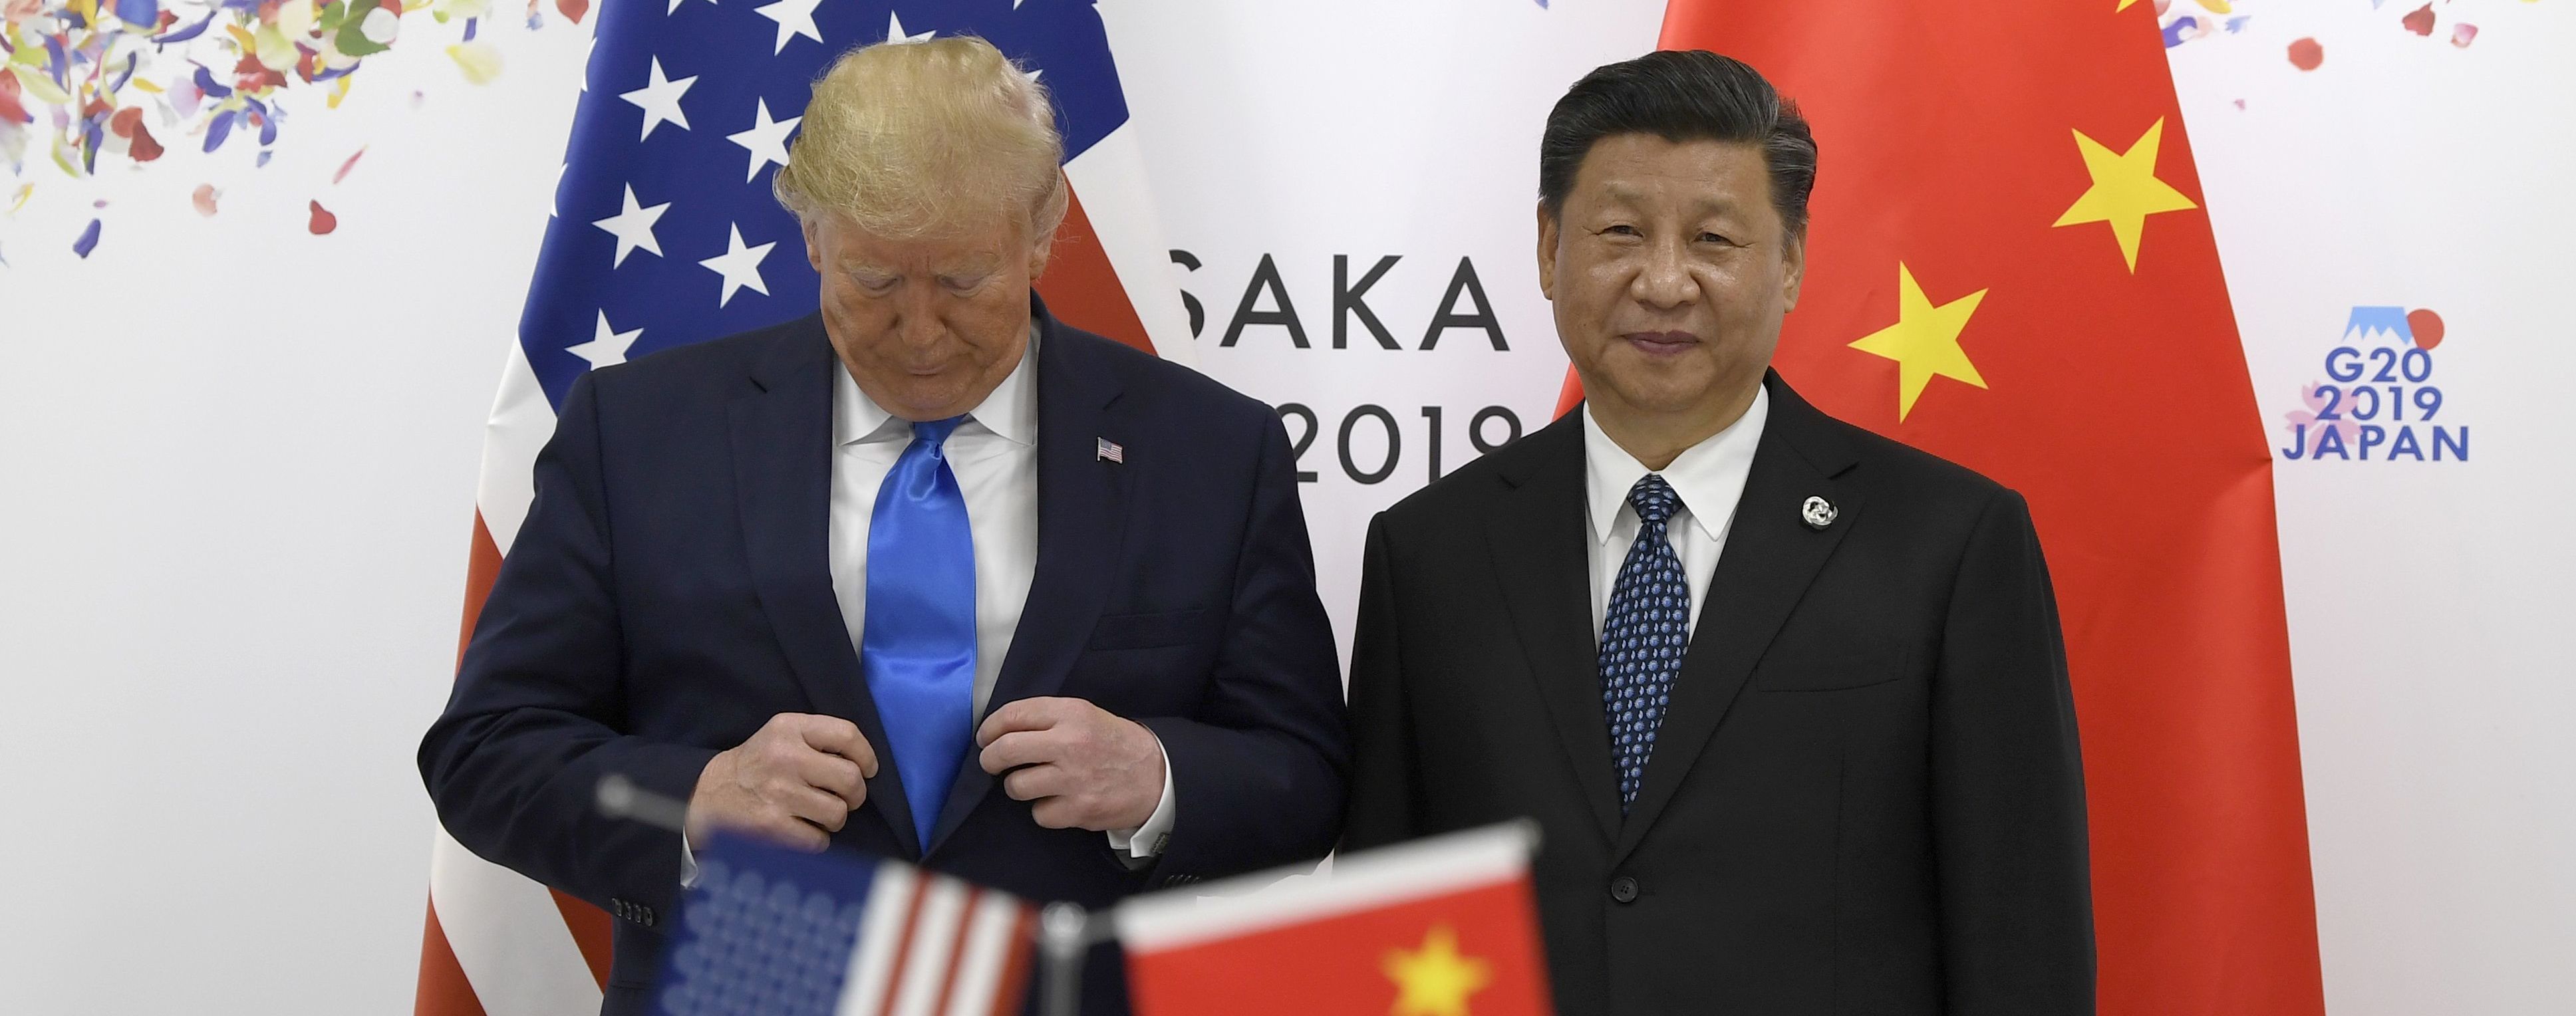 Торговые войны. США "не готовы" заключать соглашение с Китаем – Трамп